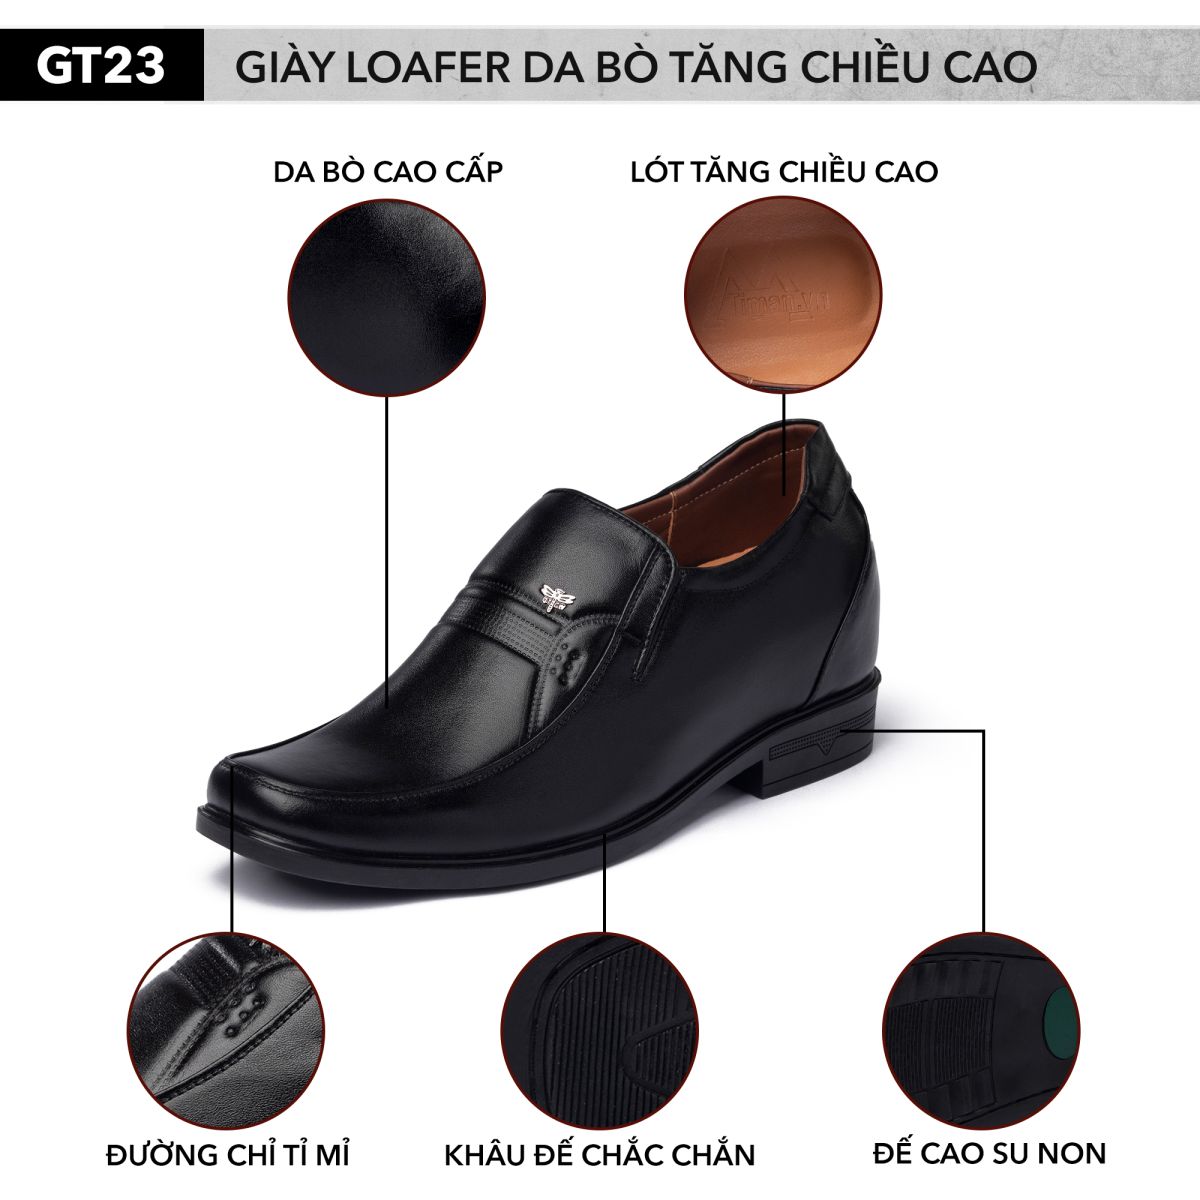 Giày tây da bò tăng chiều cao nam GT23 chính hãng